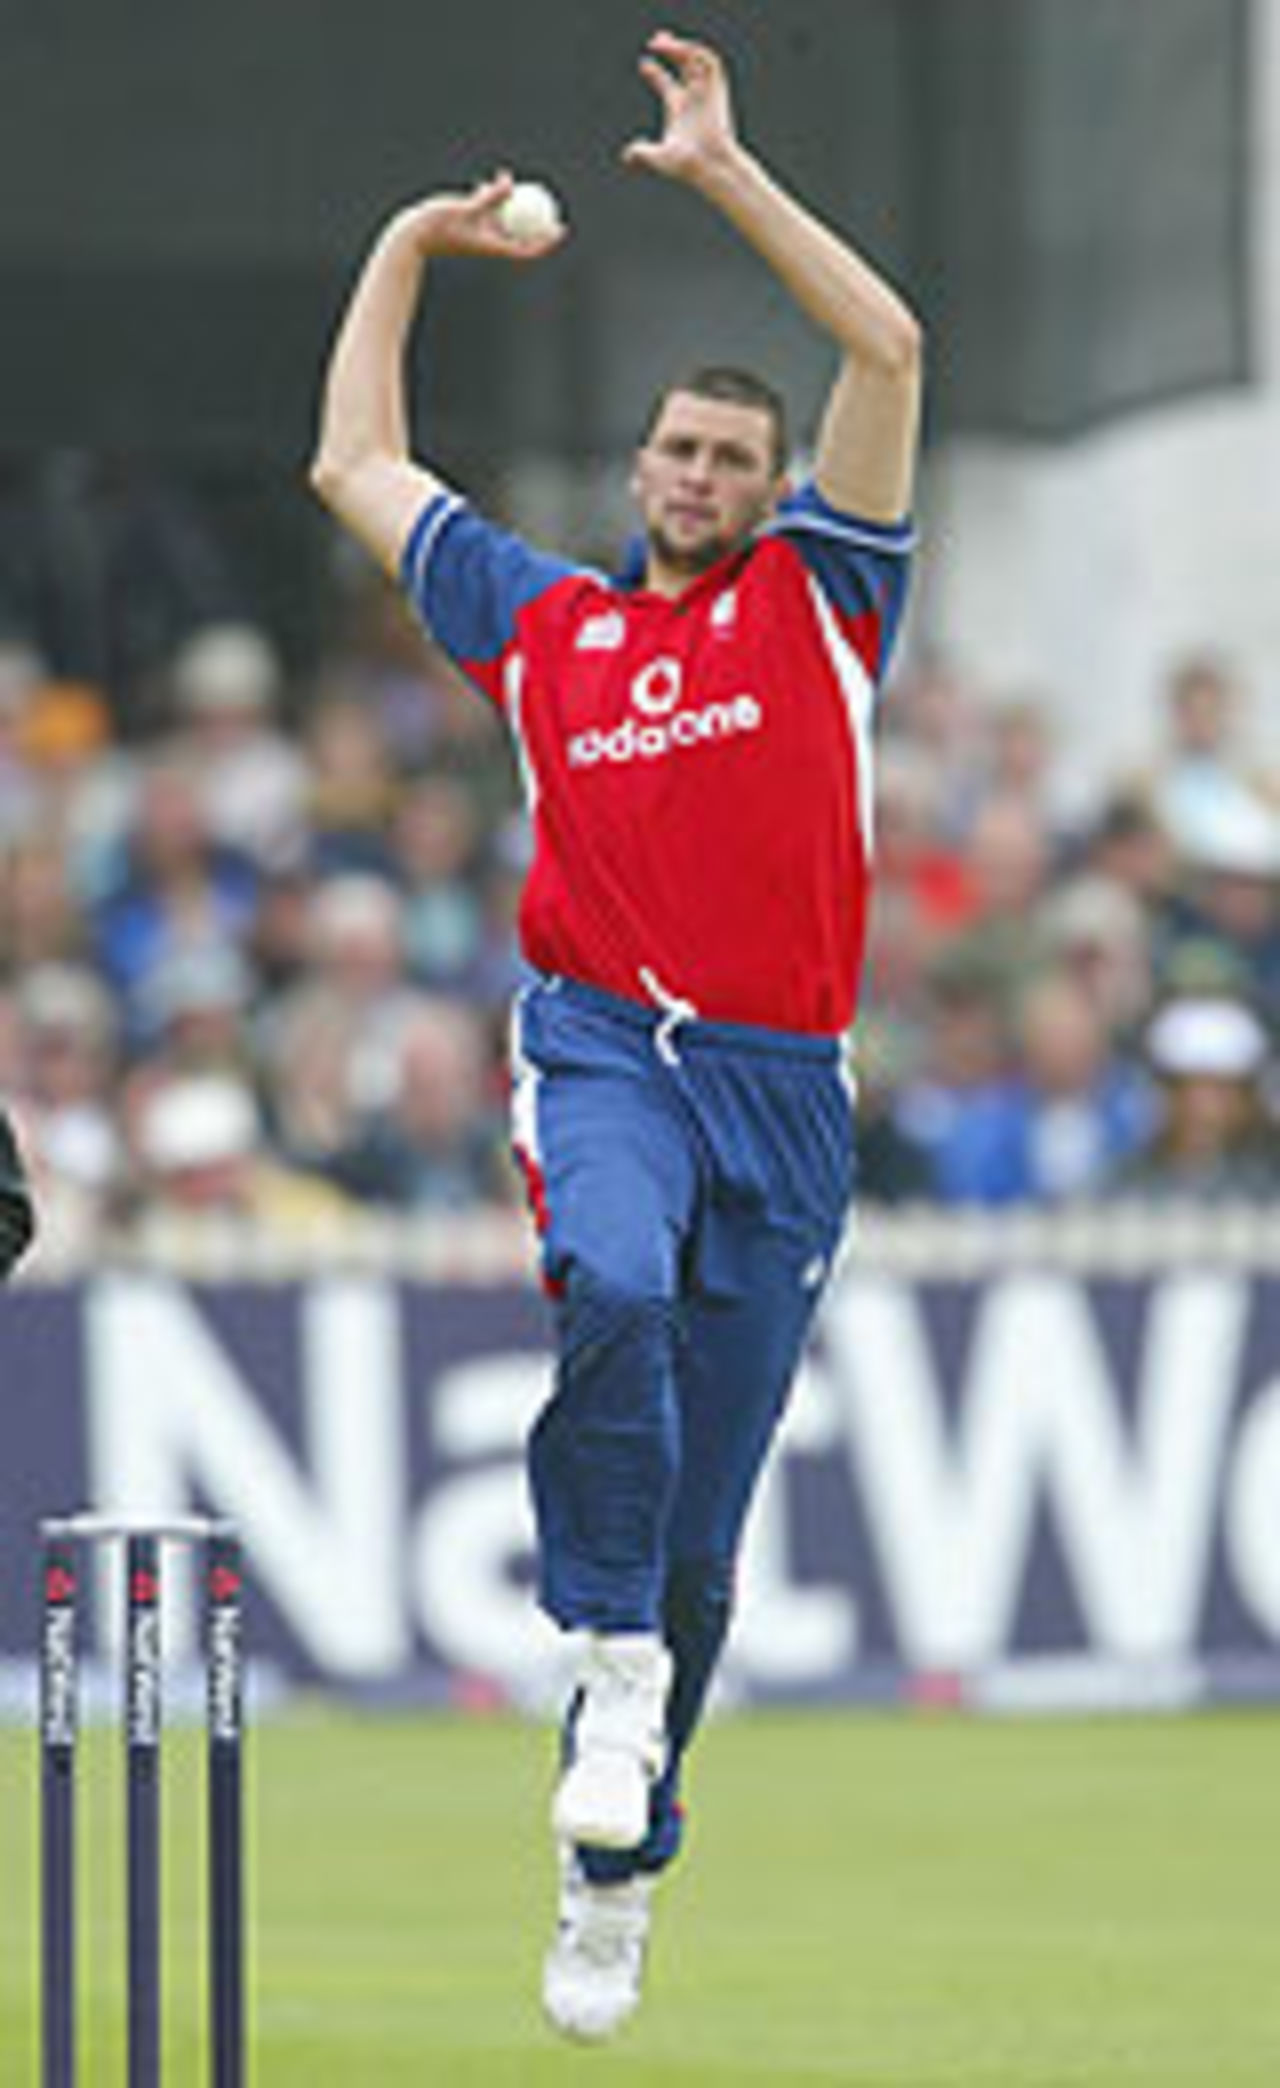 Steve Harmison bowls, England v West Indies, NatWest Series, Old Trafford, 2004